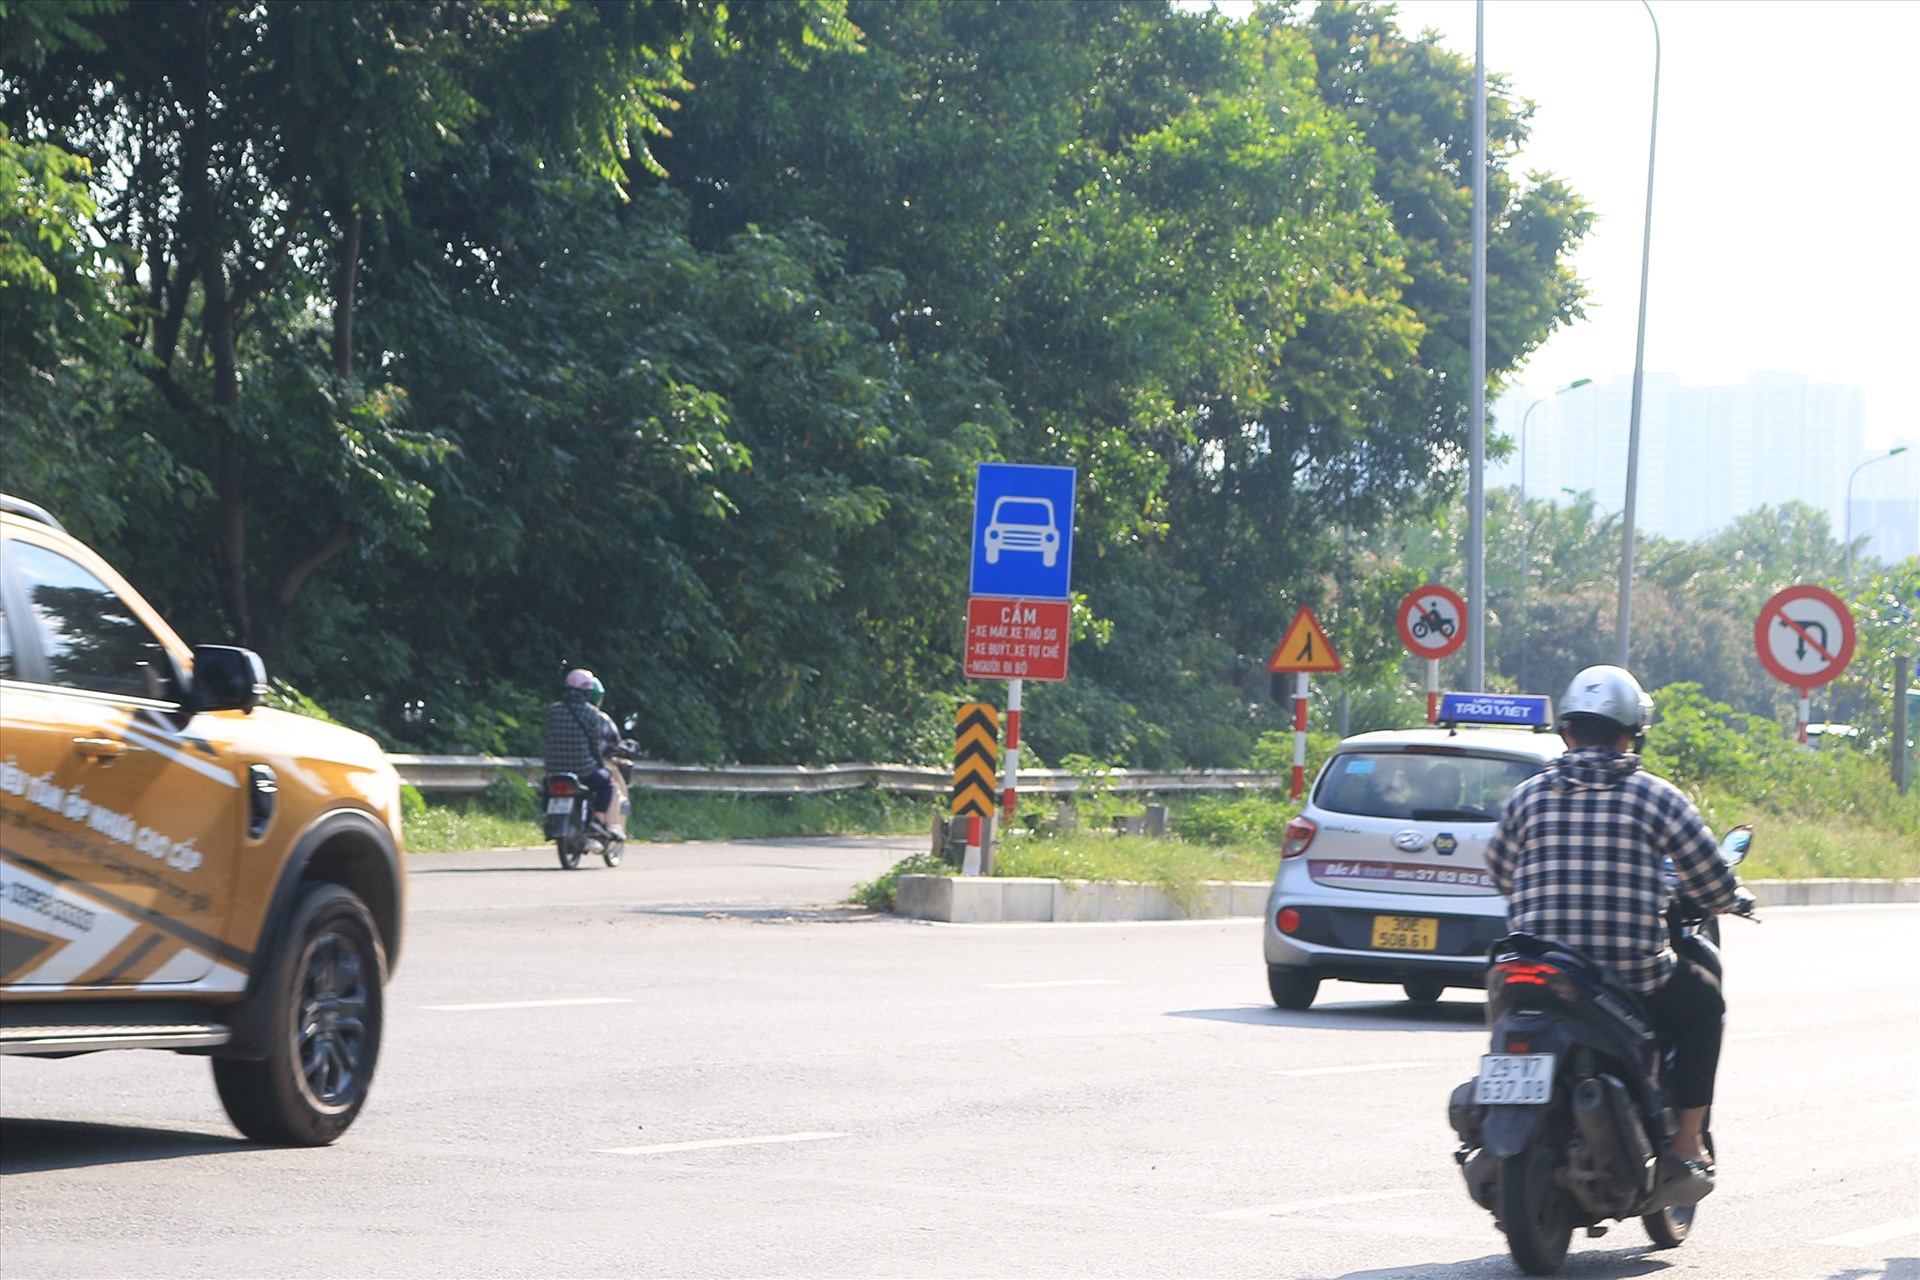 Các lối vào cao tốc Đại lộ Thăng Long cũng đề biển cấm xe máy, song nhiều người vẫn bất chấp đi vào khu vực này. 